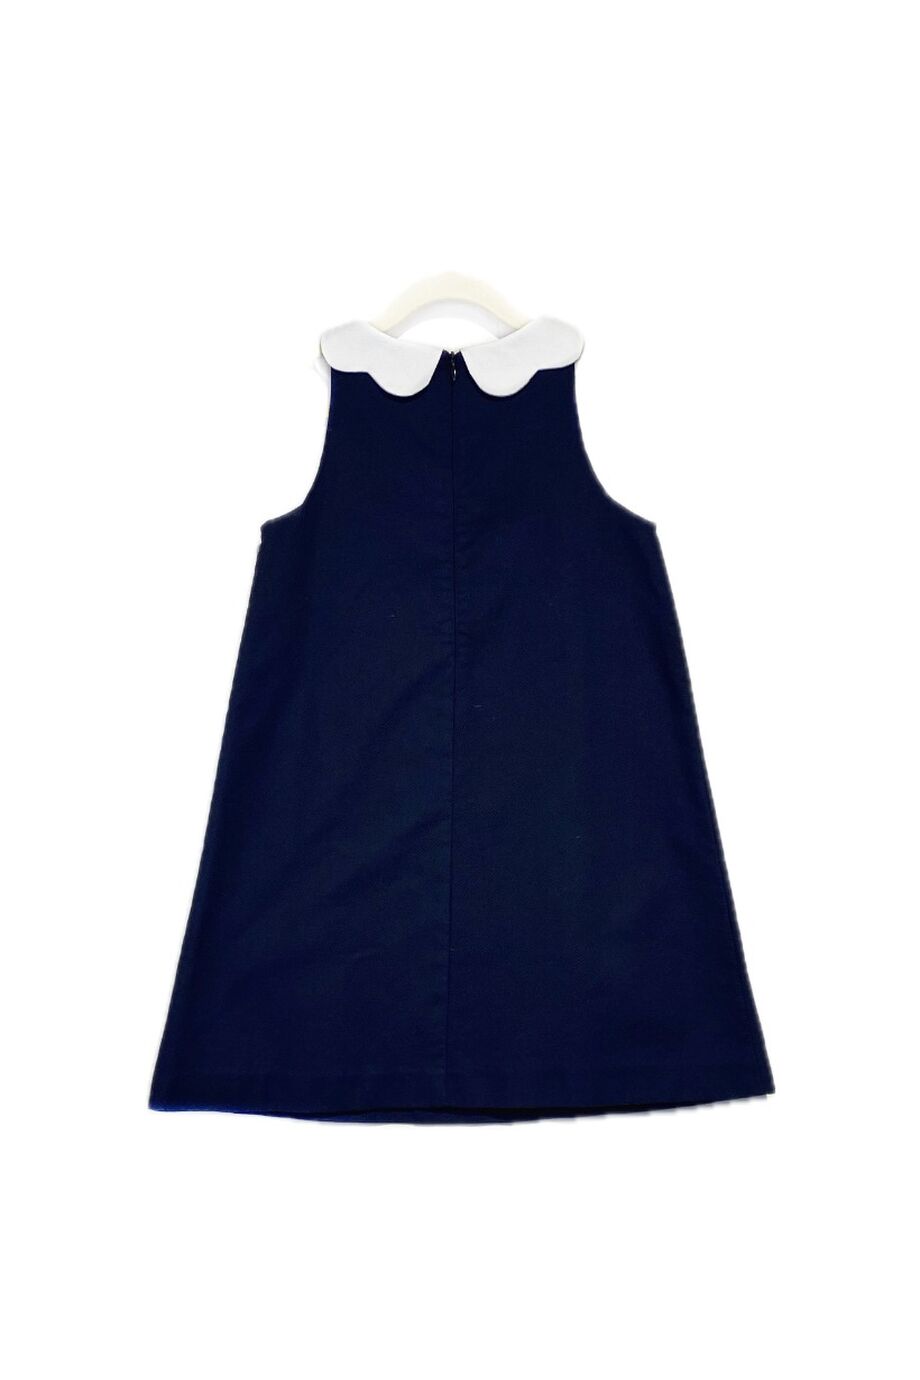 image 2 Детское платье темно-синего цвета с белой манишкой